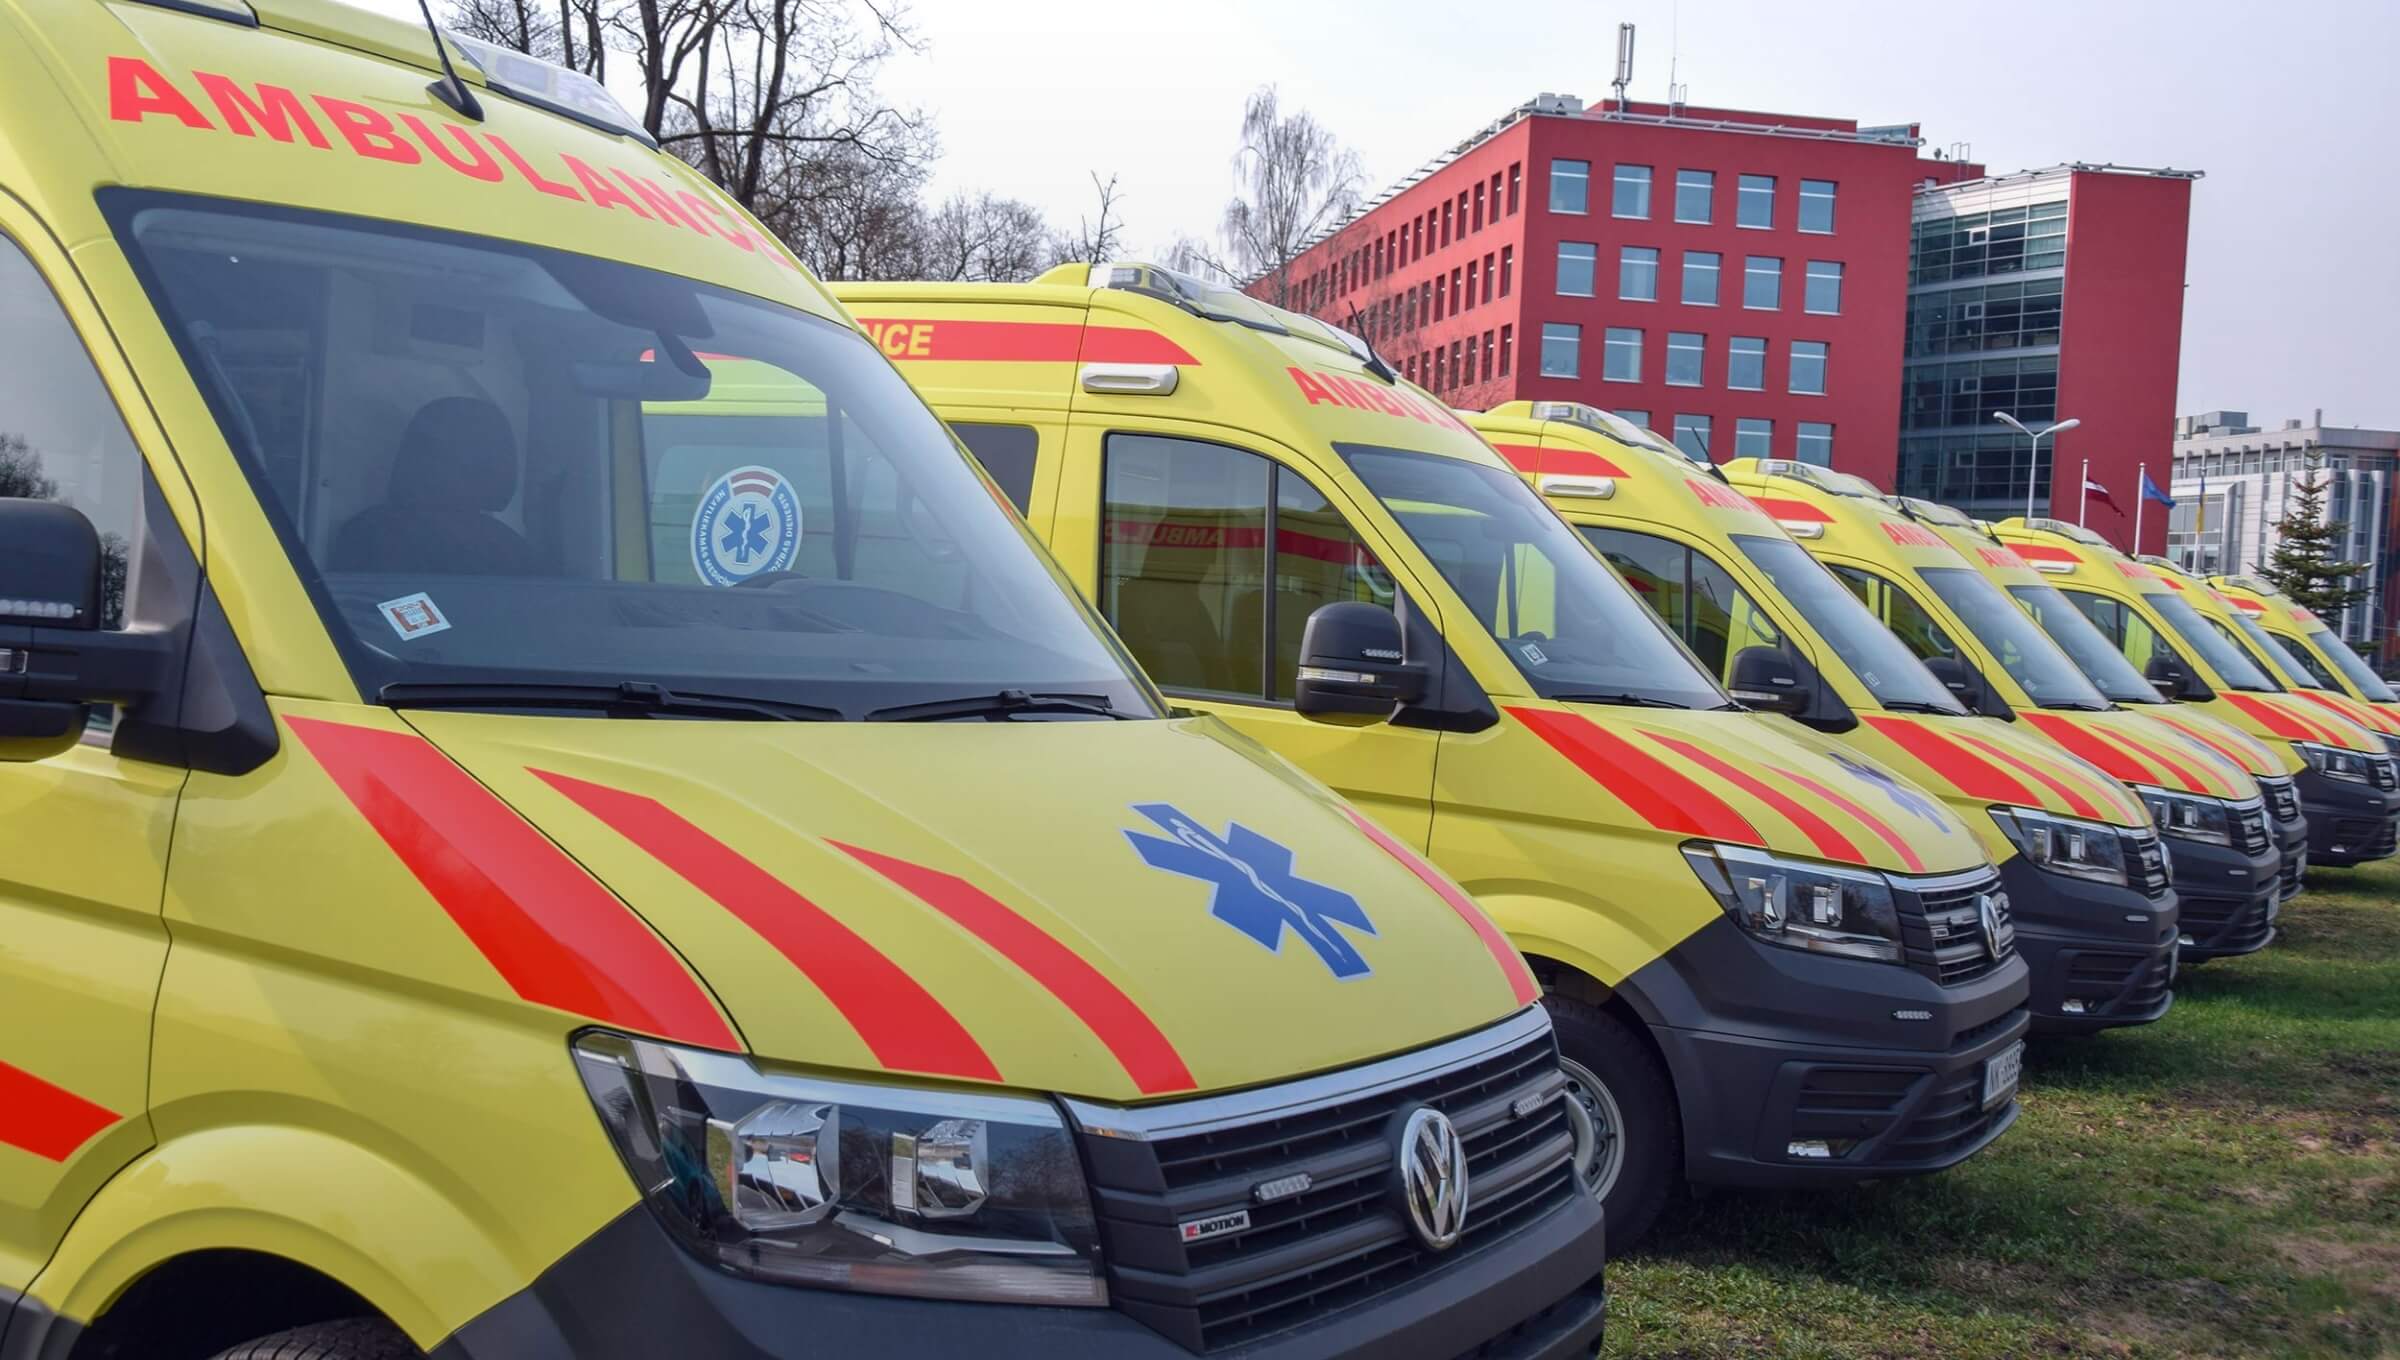 Ambulance vehicles